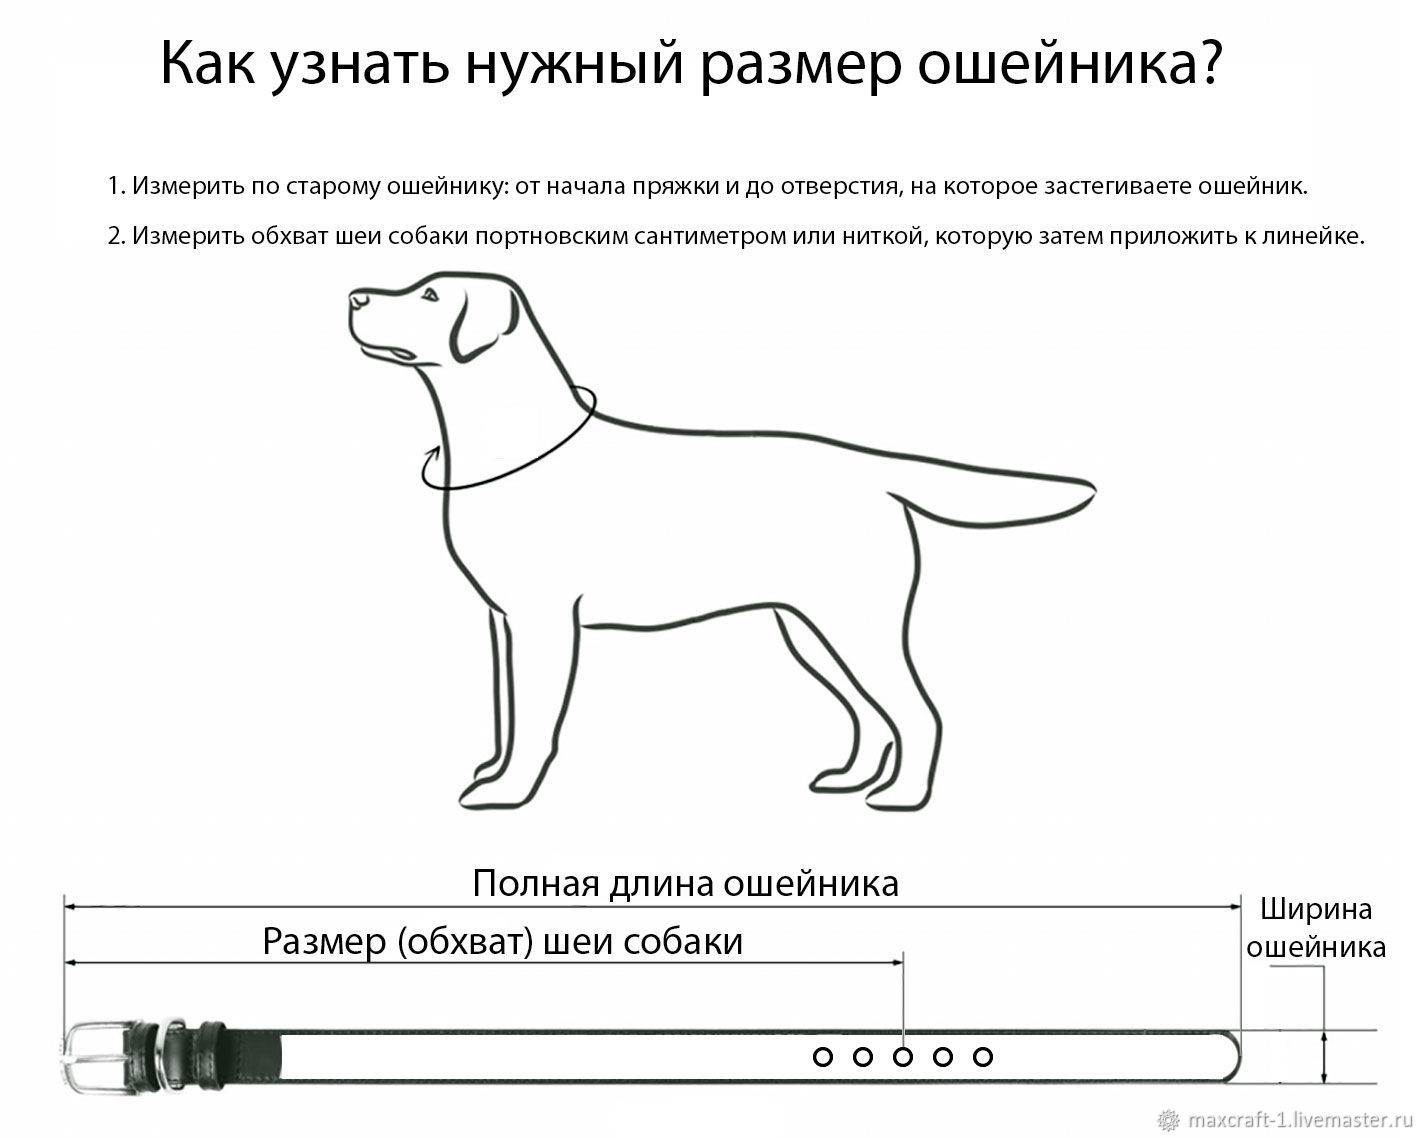 Как сделать ошейник для собаки своими руками — пошаговая инструкция, фото, видео